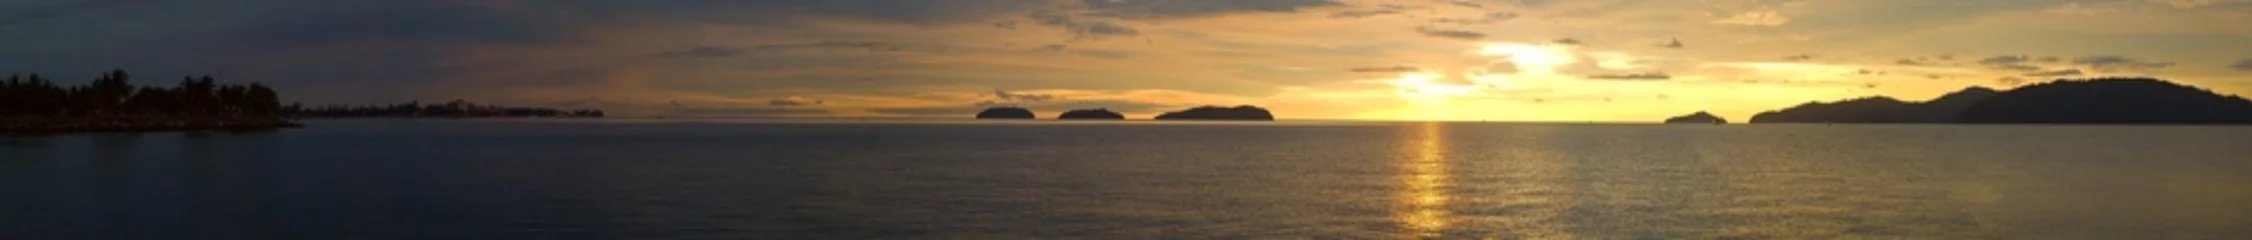 Papier Peint photo autocollant Panoramique Une vue panoramique ultra large sur un océan de coucher de soleil doré